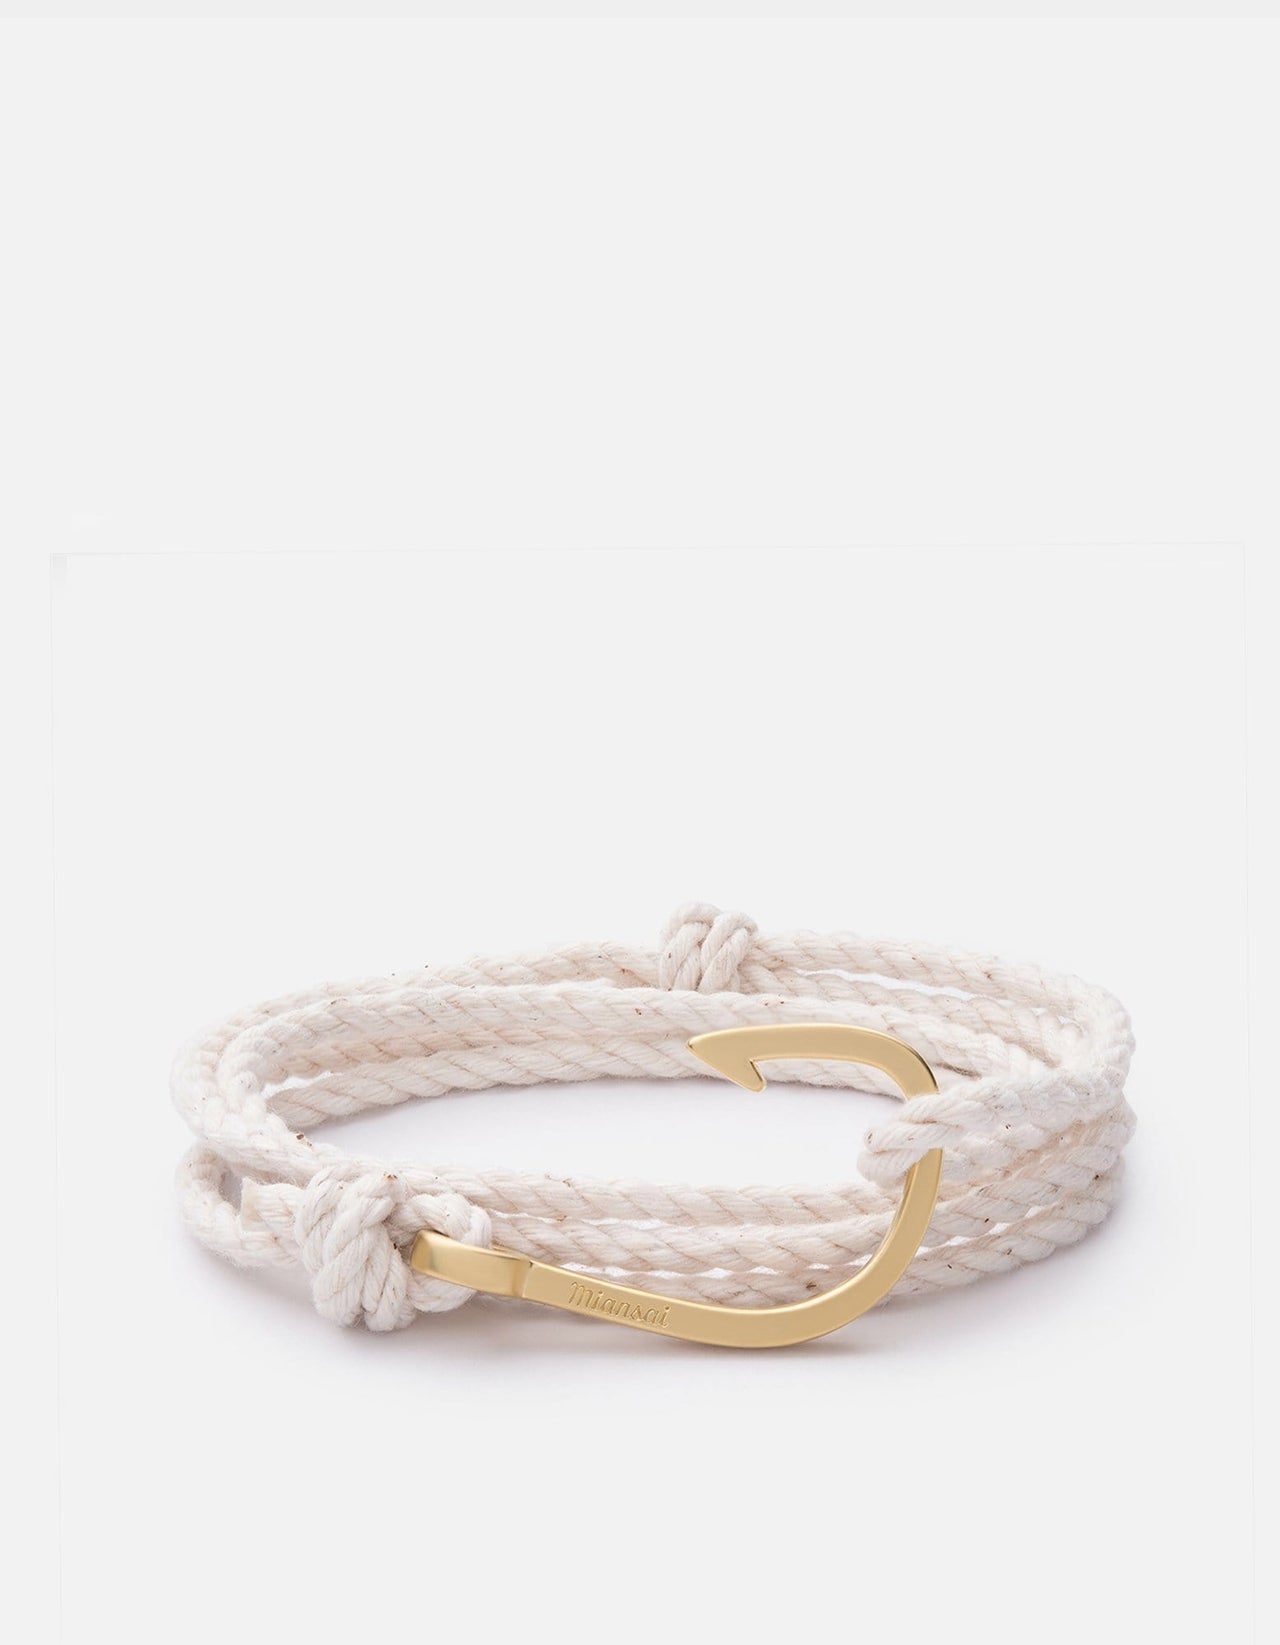 Hook on Rope Bracelet, Matte Gold, Men's Bracelets